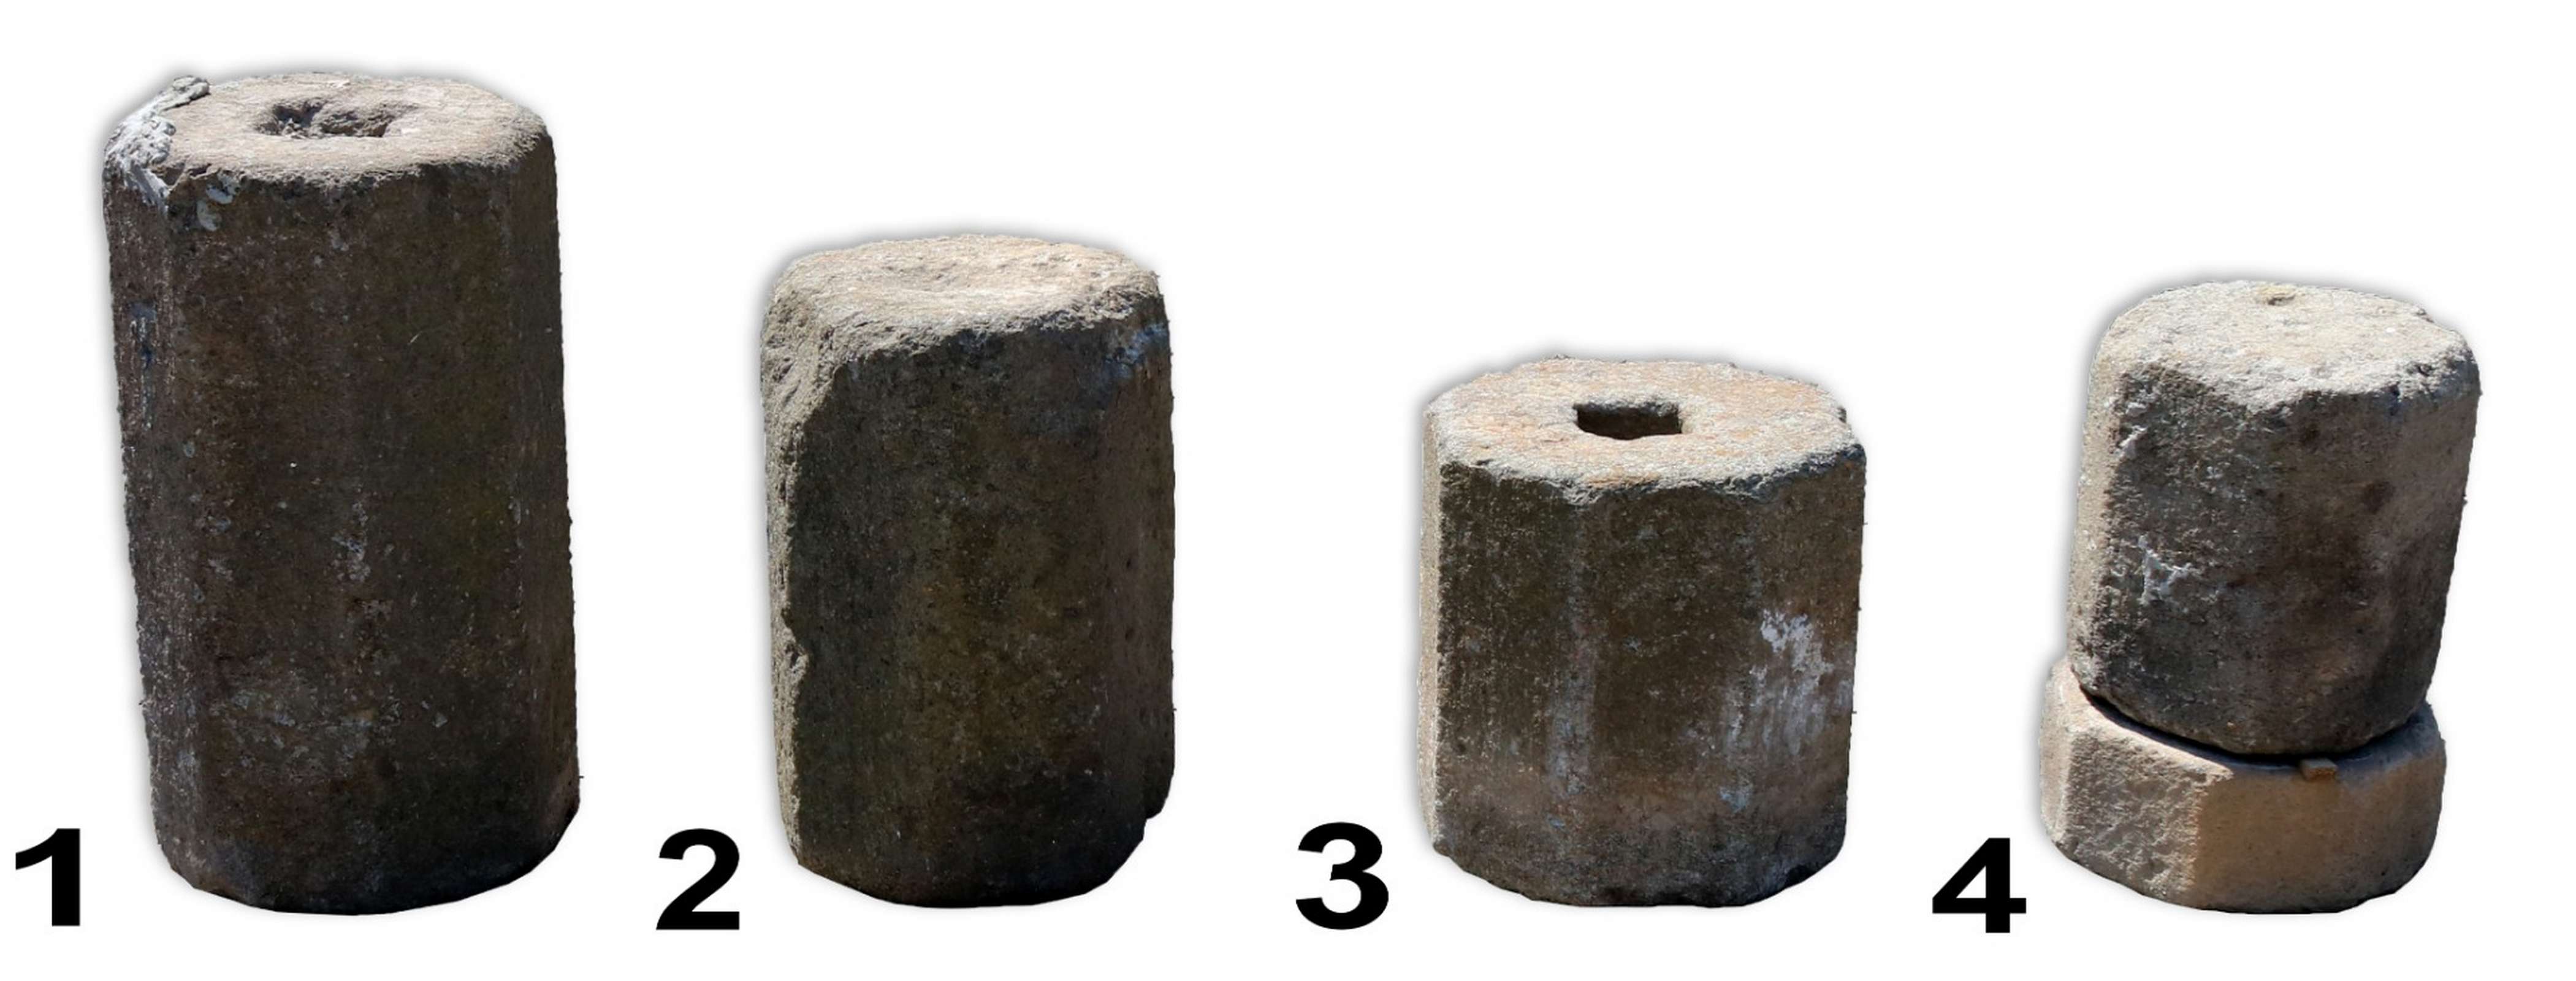 Quattro antiche colonne ottagonali in pietra. Epoca 1600. - Colonne antiche - Architettura - Prodotti - Antichità Fiorillo